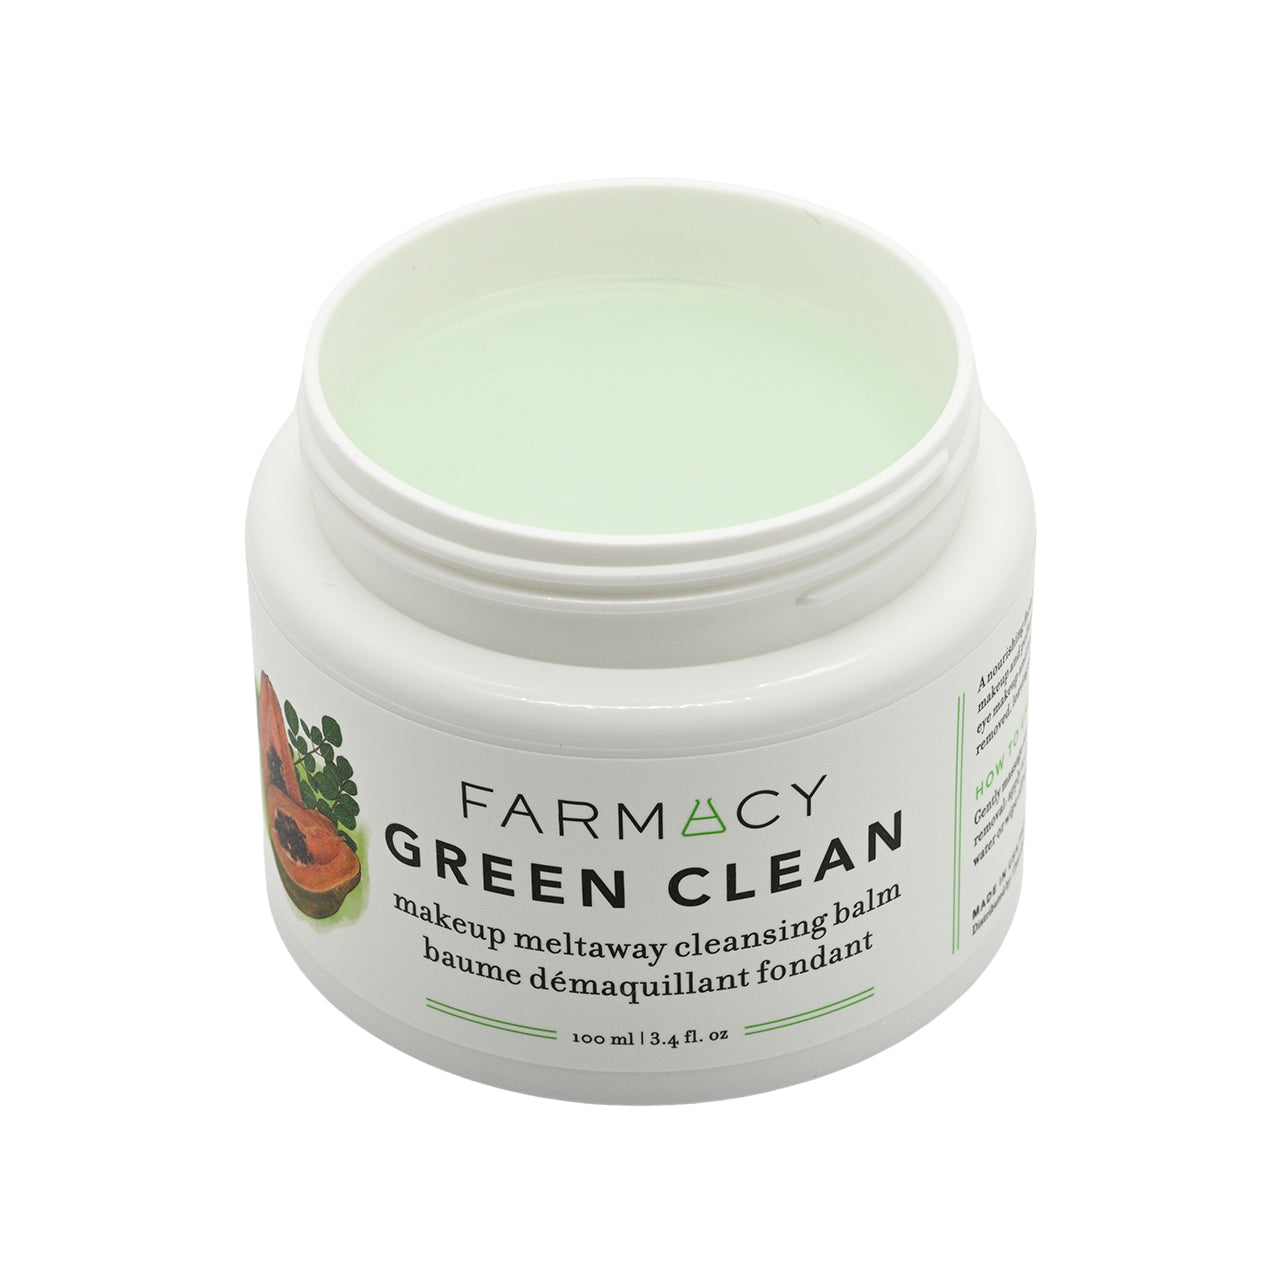 Farmacy Green Clean Cleansing Balm 100ml